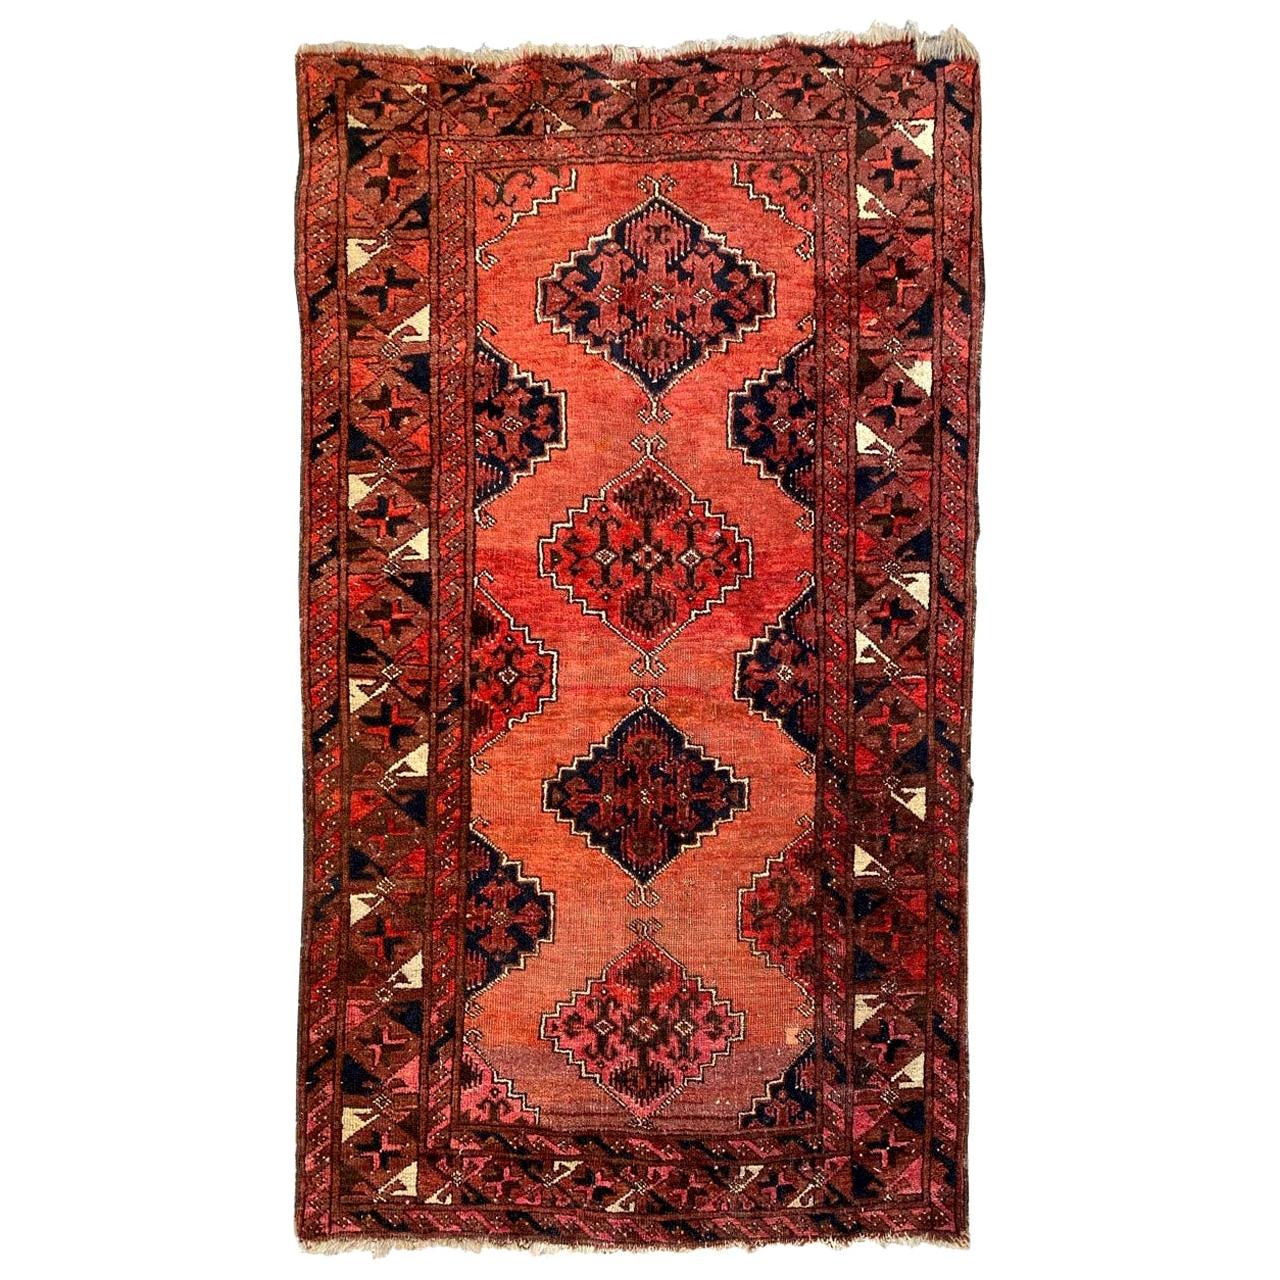 Bobyrug's nice Antique Turkmen Afghan Rug (tapis afghan ancien)